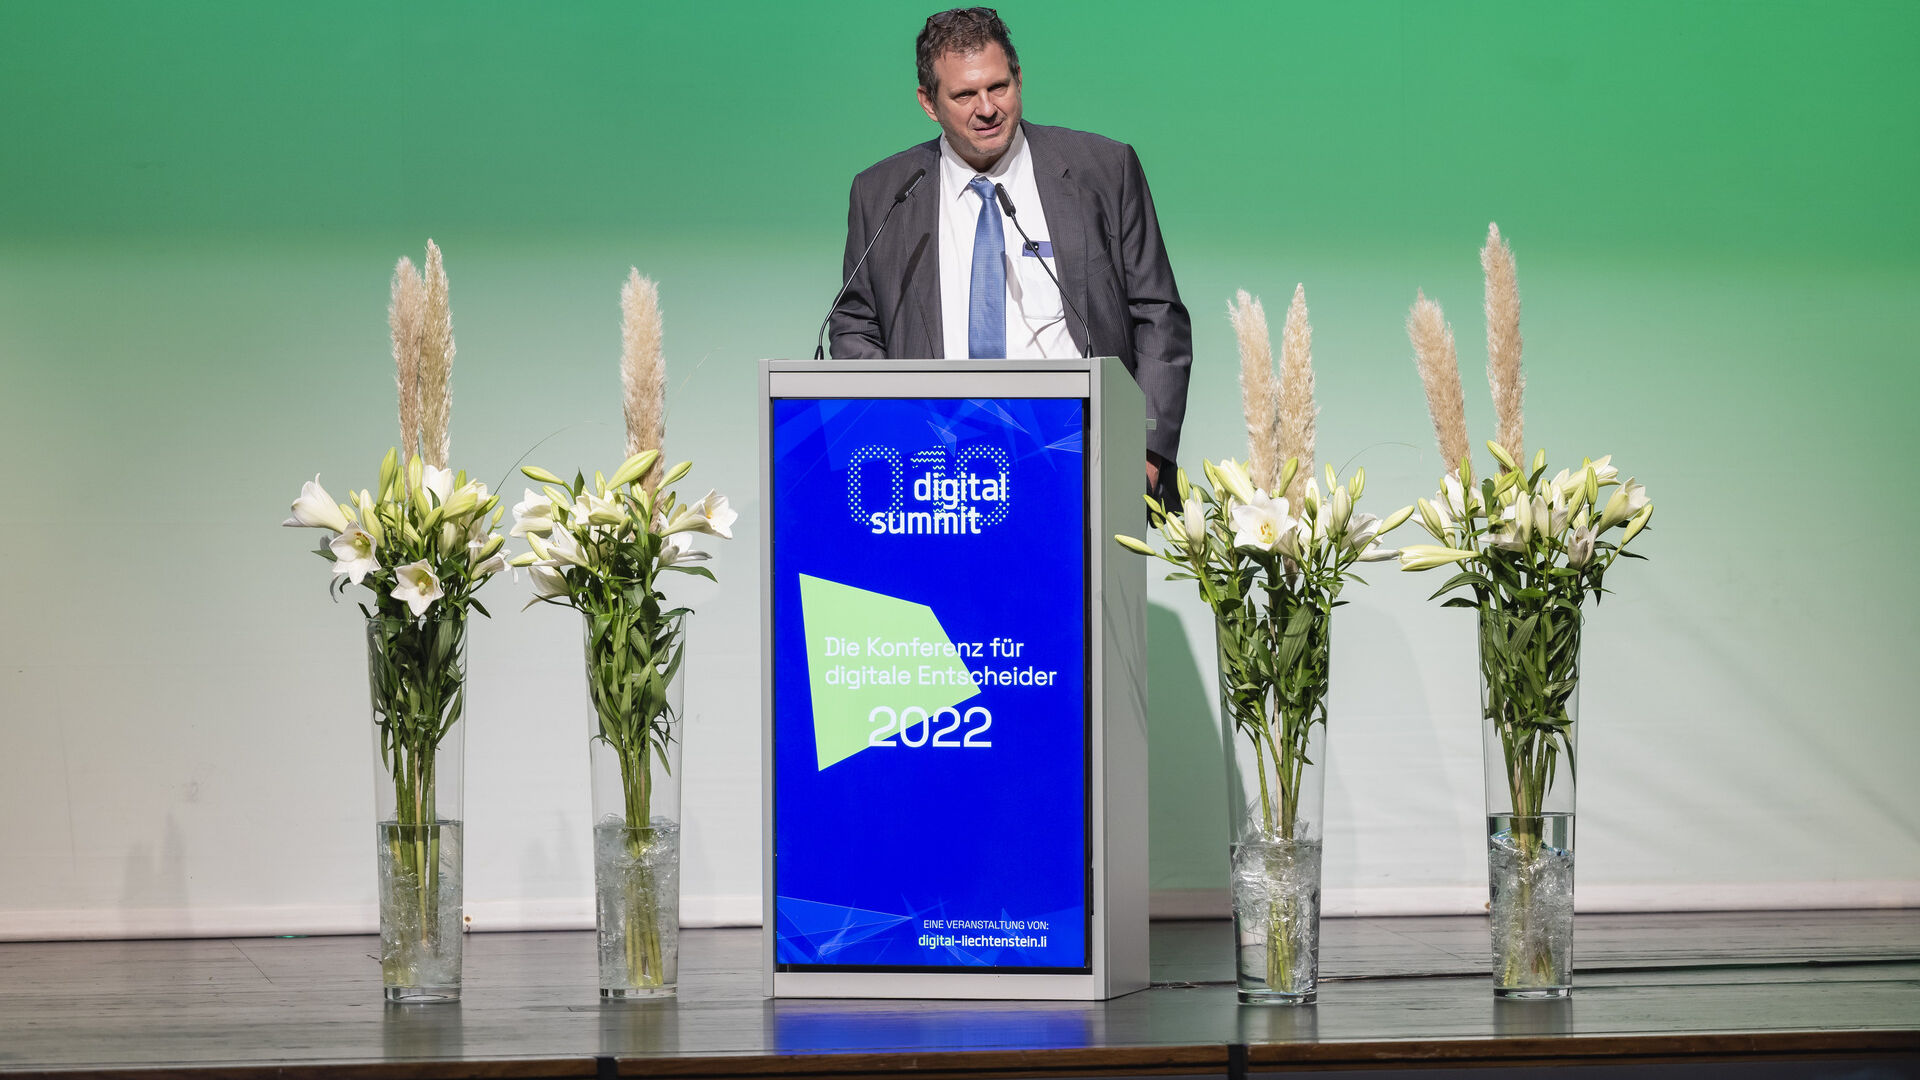 Vydanie podujatia „Digitálny samit“ v roku 2022 vo Vaduze